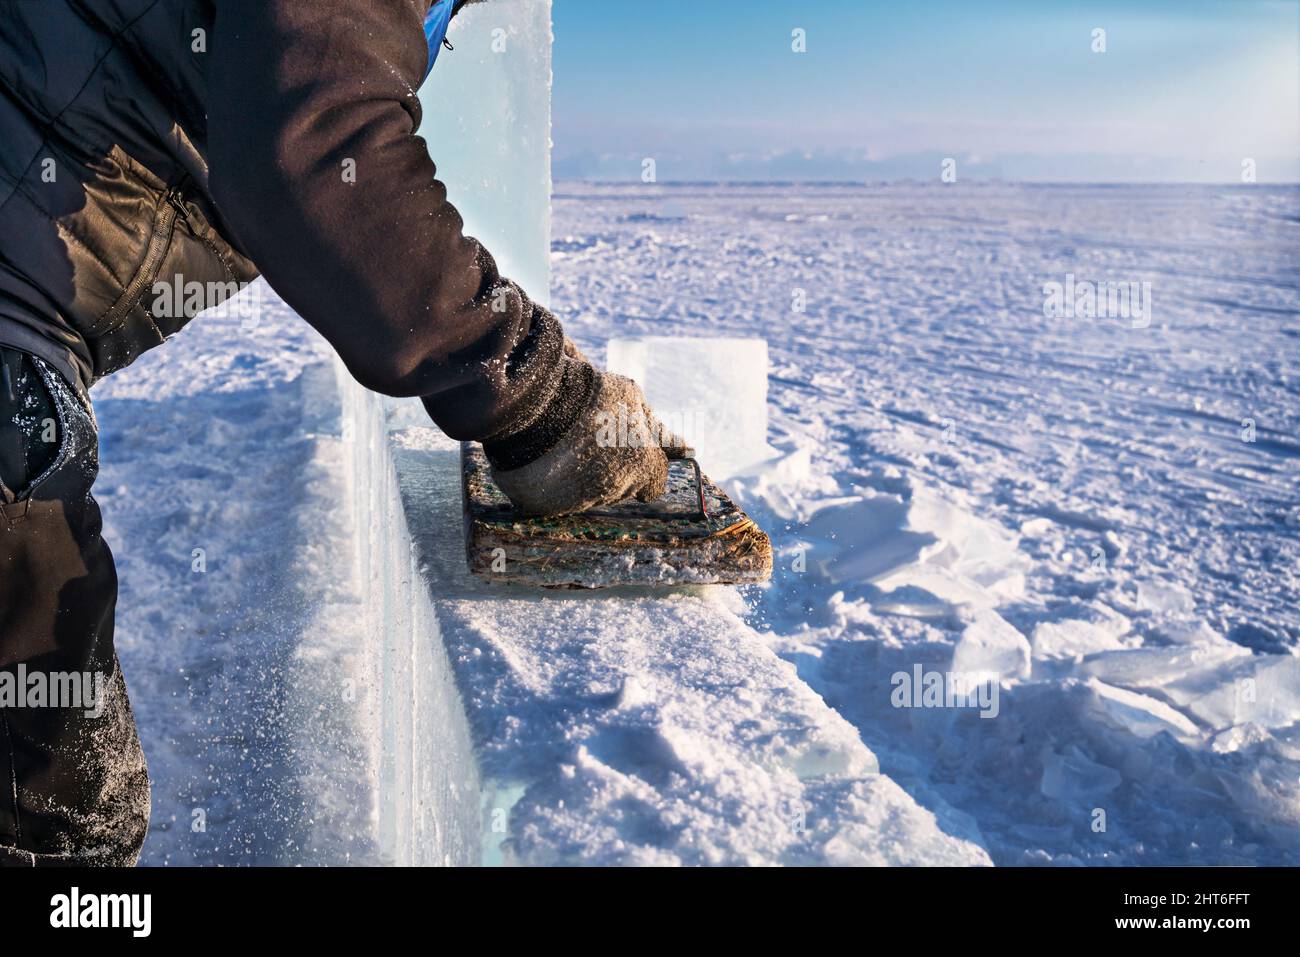 Lo scultore lucida il ghiaccio con un attrezzo fatto a mano per fare le sculture di ghiaccio sul lago Baikal. Foto Stock